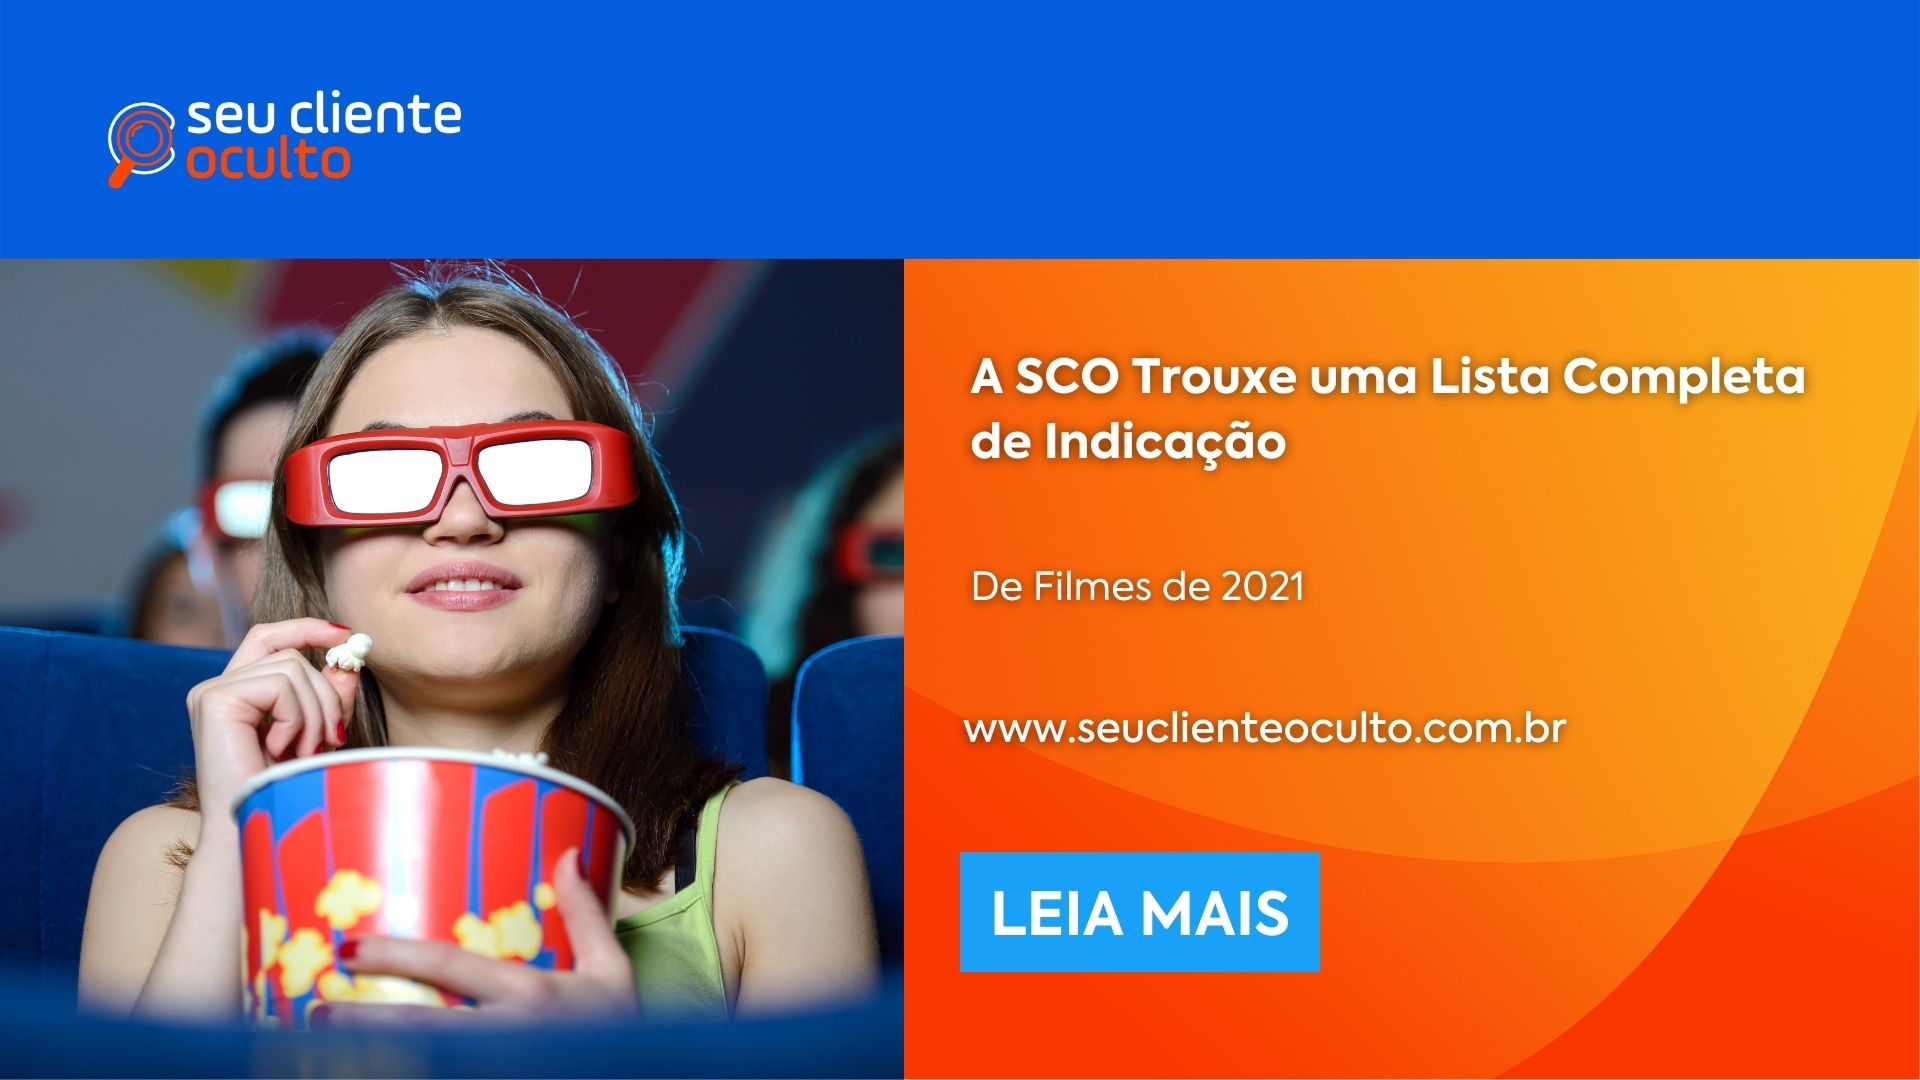 A SCO Trouxe uma Lista Completa de Indicação de Filmes de 2021 - Seu Cliente Oculto